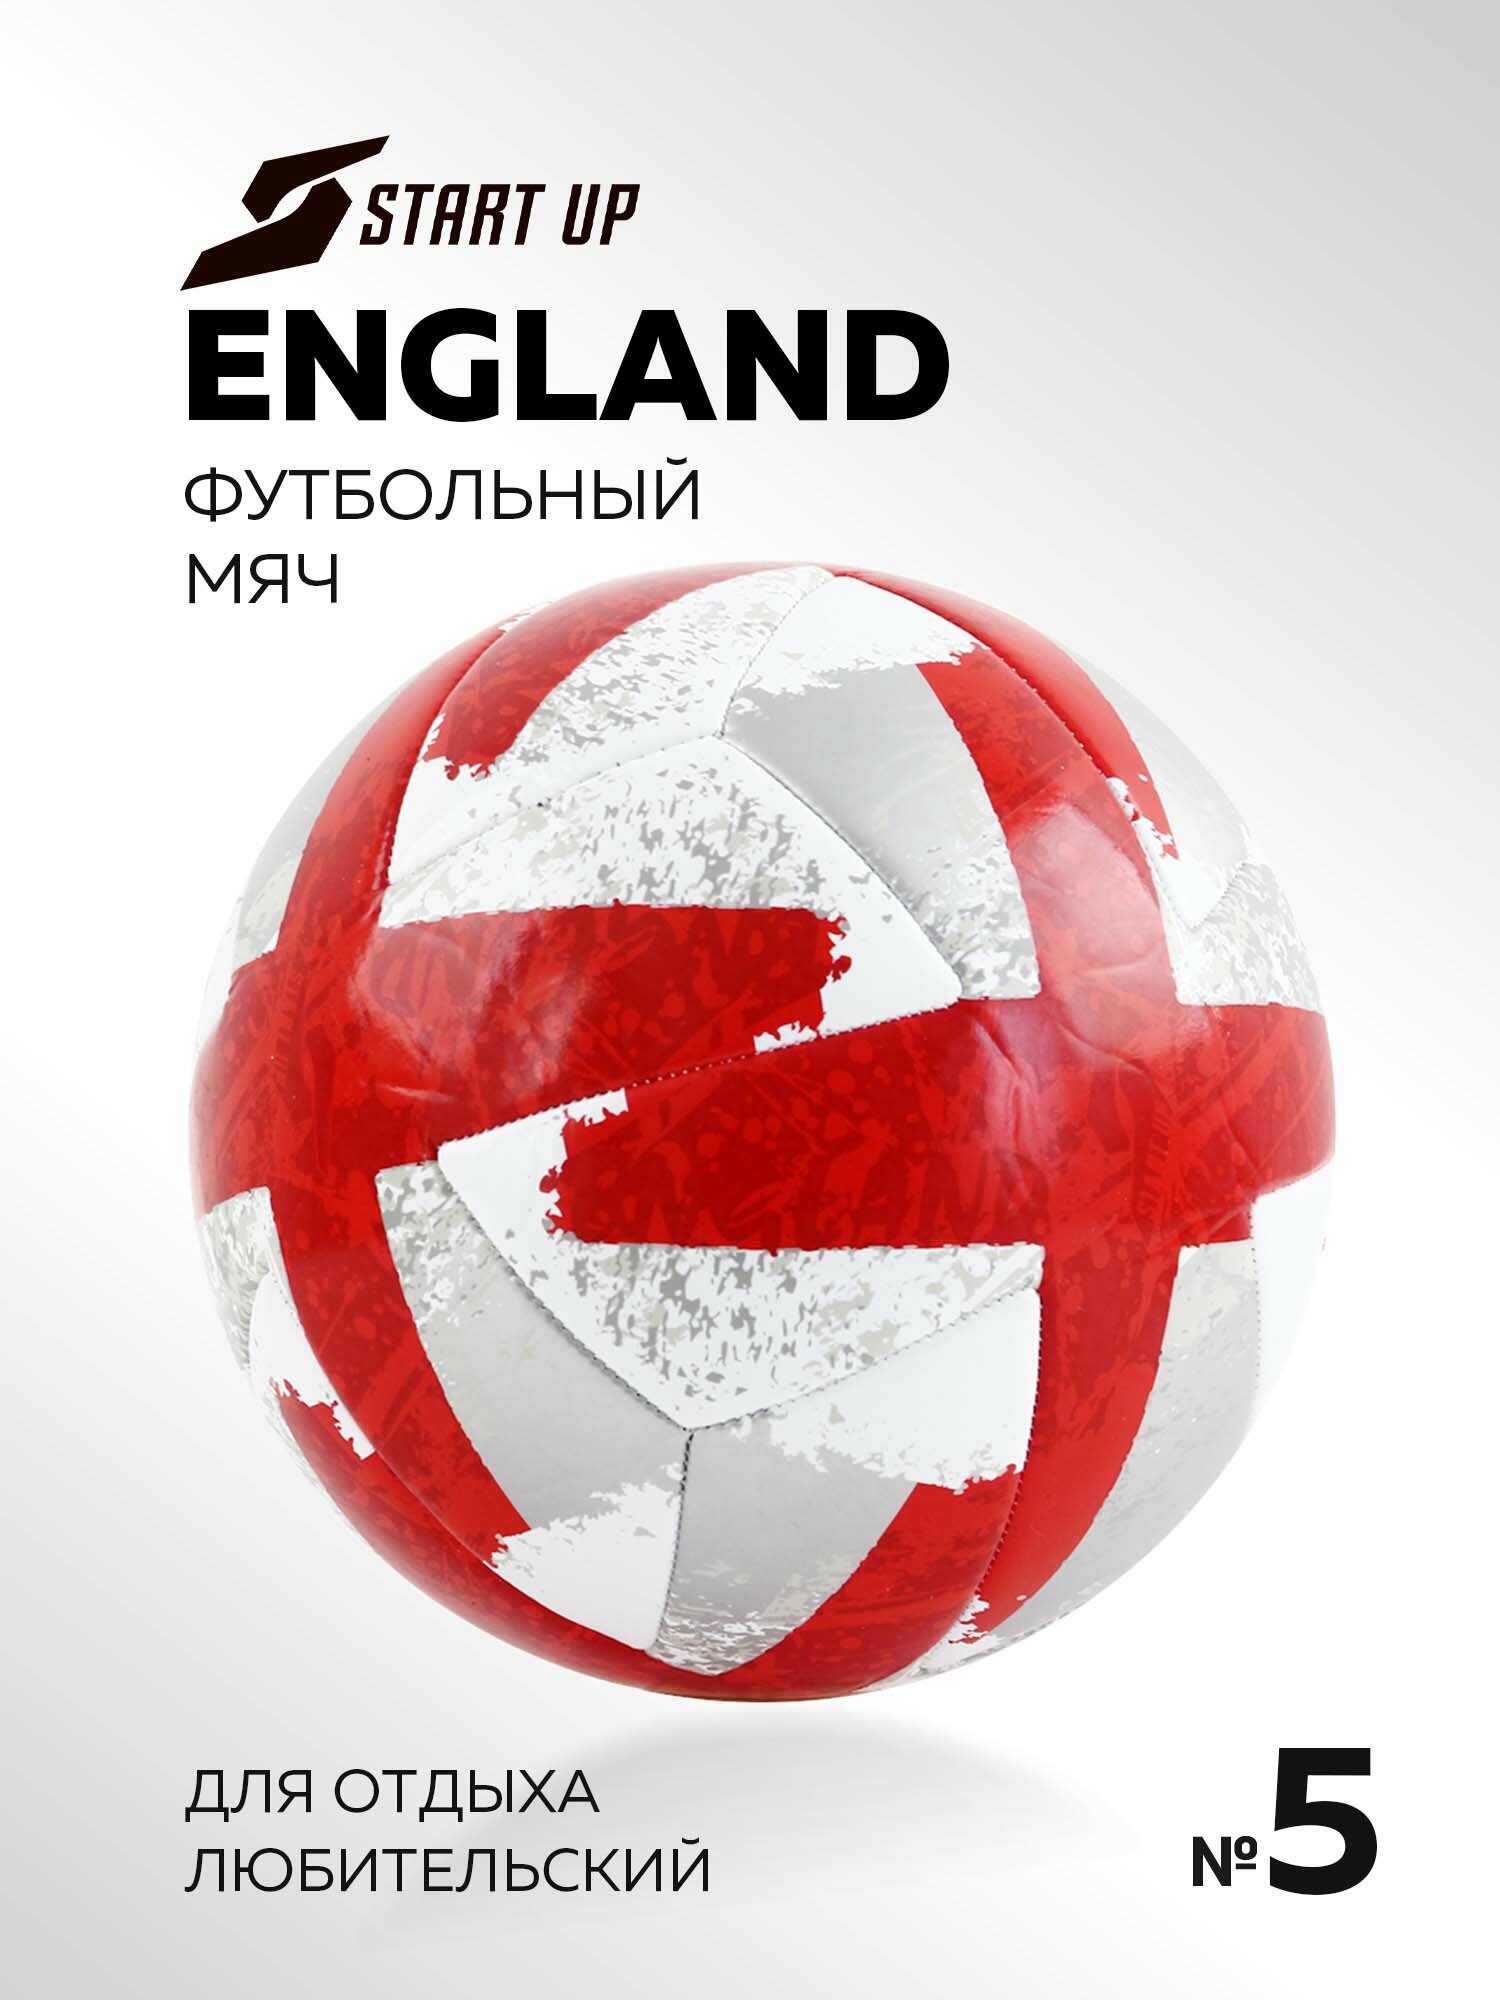 Мяч футбольный для отдыха Start Up E5127 England